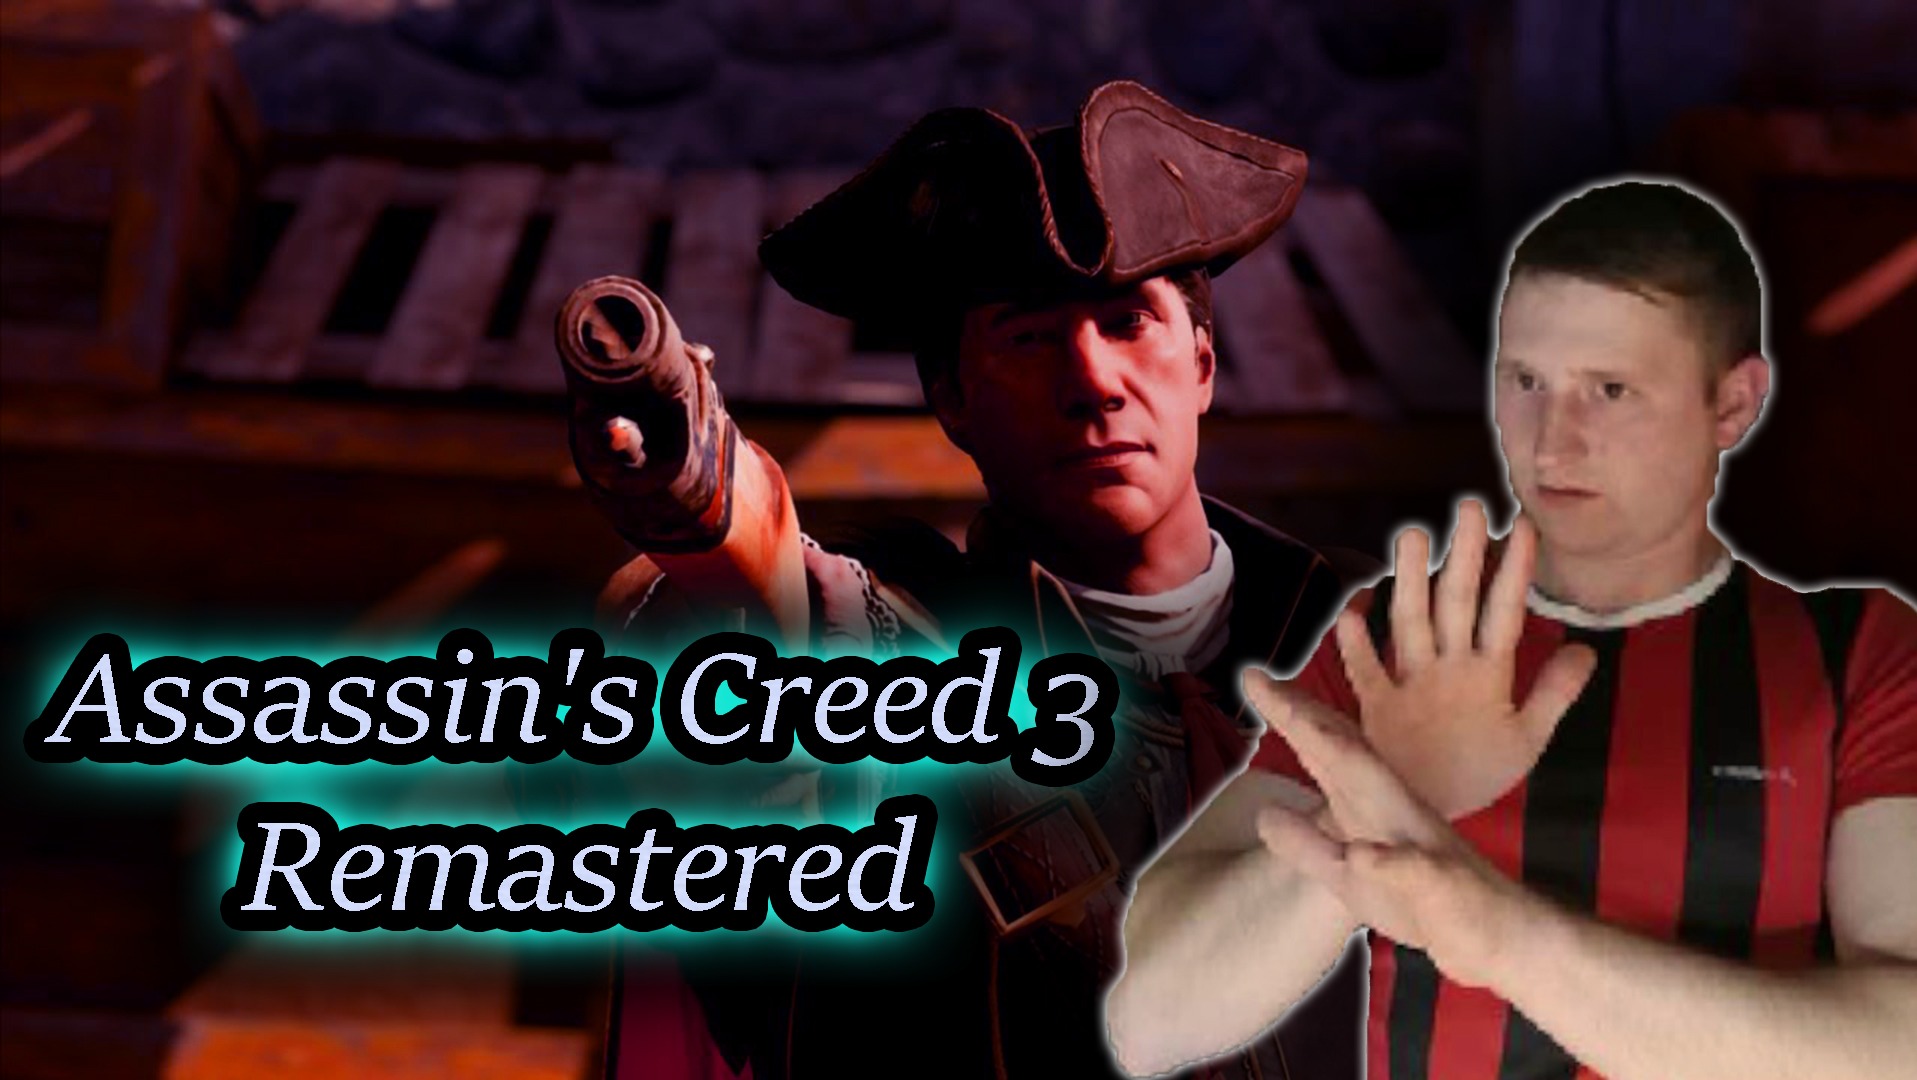 ПОИСК ПАПАШИ ✔ Assassin's Creed III Remastered